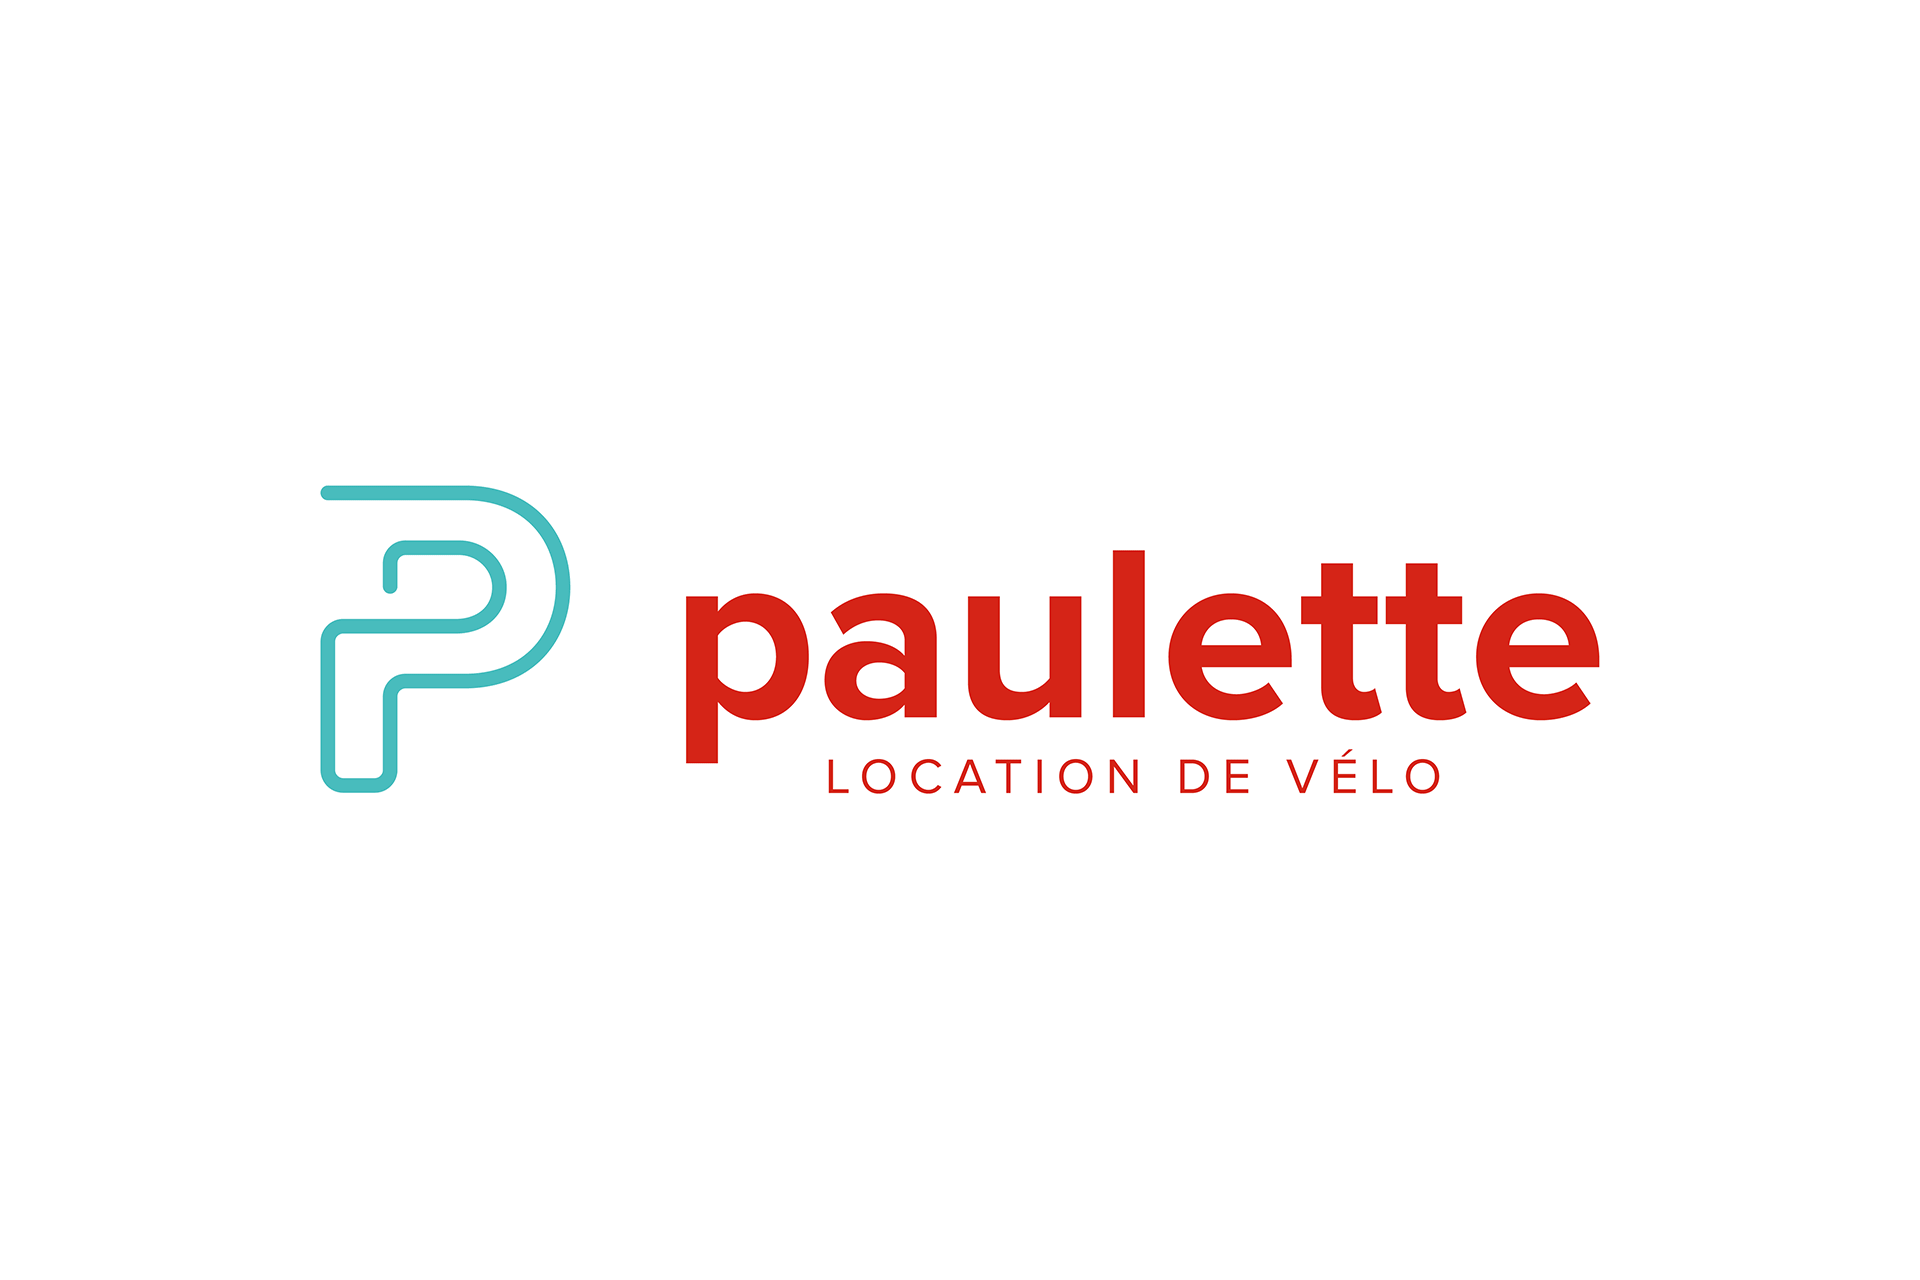 Paulette, location de vélo